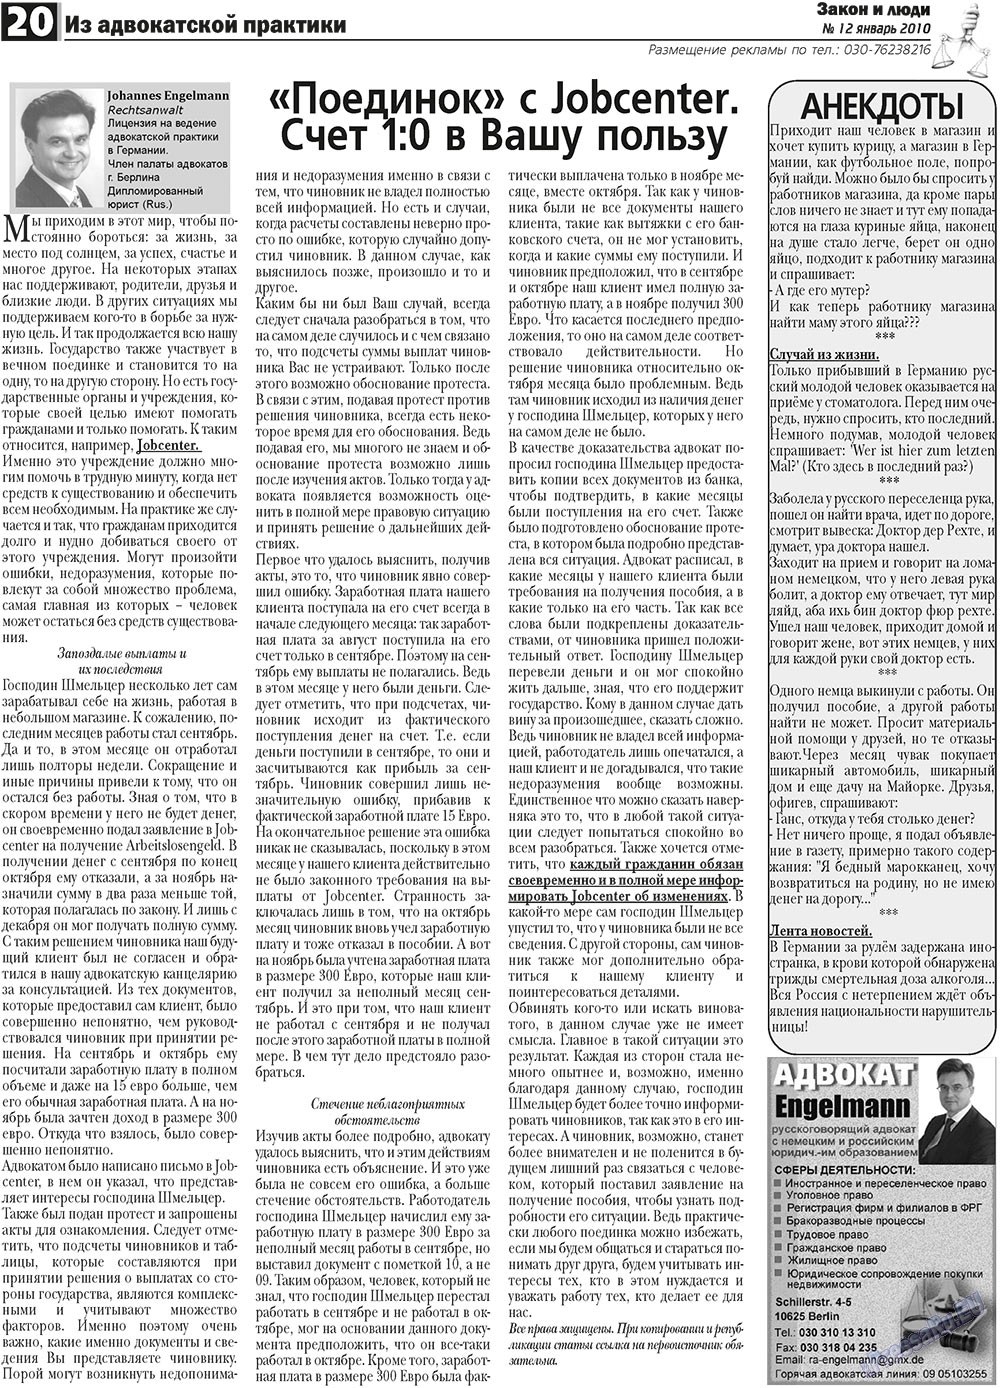 Закон и люди, газета. 2011 №1 стр.20